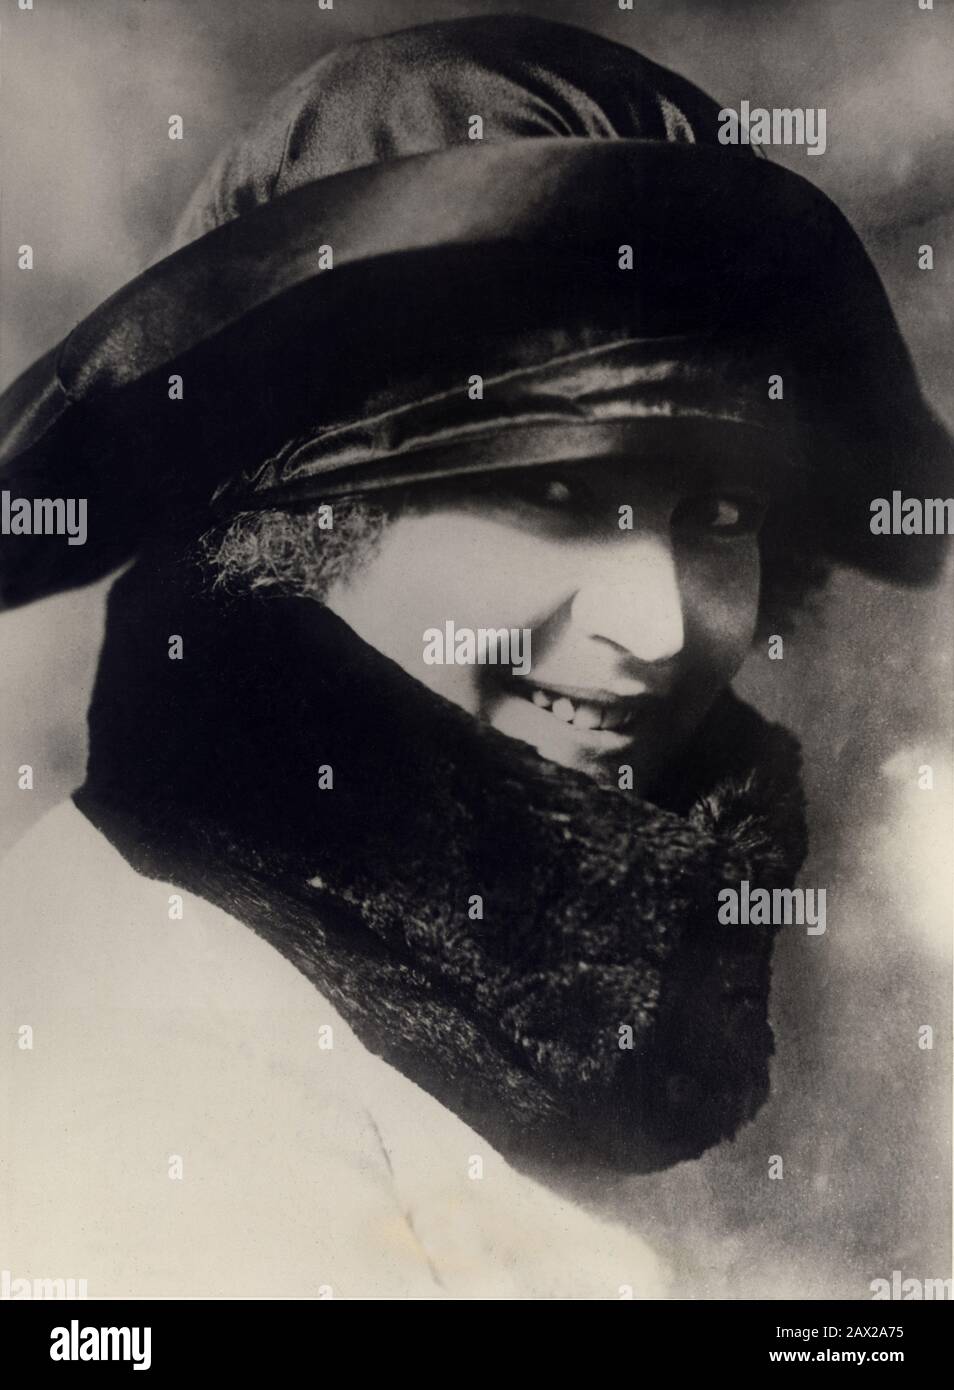 1924 ca. , Milano , Italia : Donna RACHELE GUIDI (1893-1979), moglie del fascista italiano Duce dittatore Benito MUSSOLINI . - ritratto - ritatto - moglie - pelliccia - pelliccia - sorriso - ritatto - MODA - moda - moda - ANNI venti - 20 - cappello - cappello ---- Archivio GBB Foto Stock